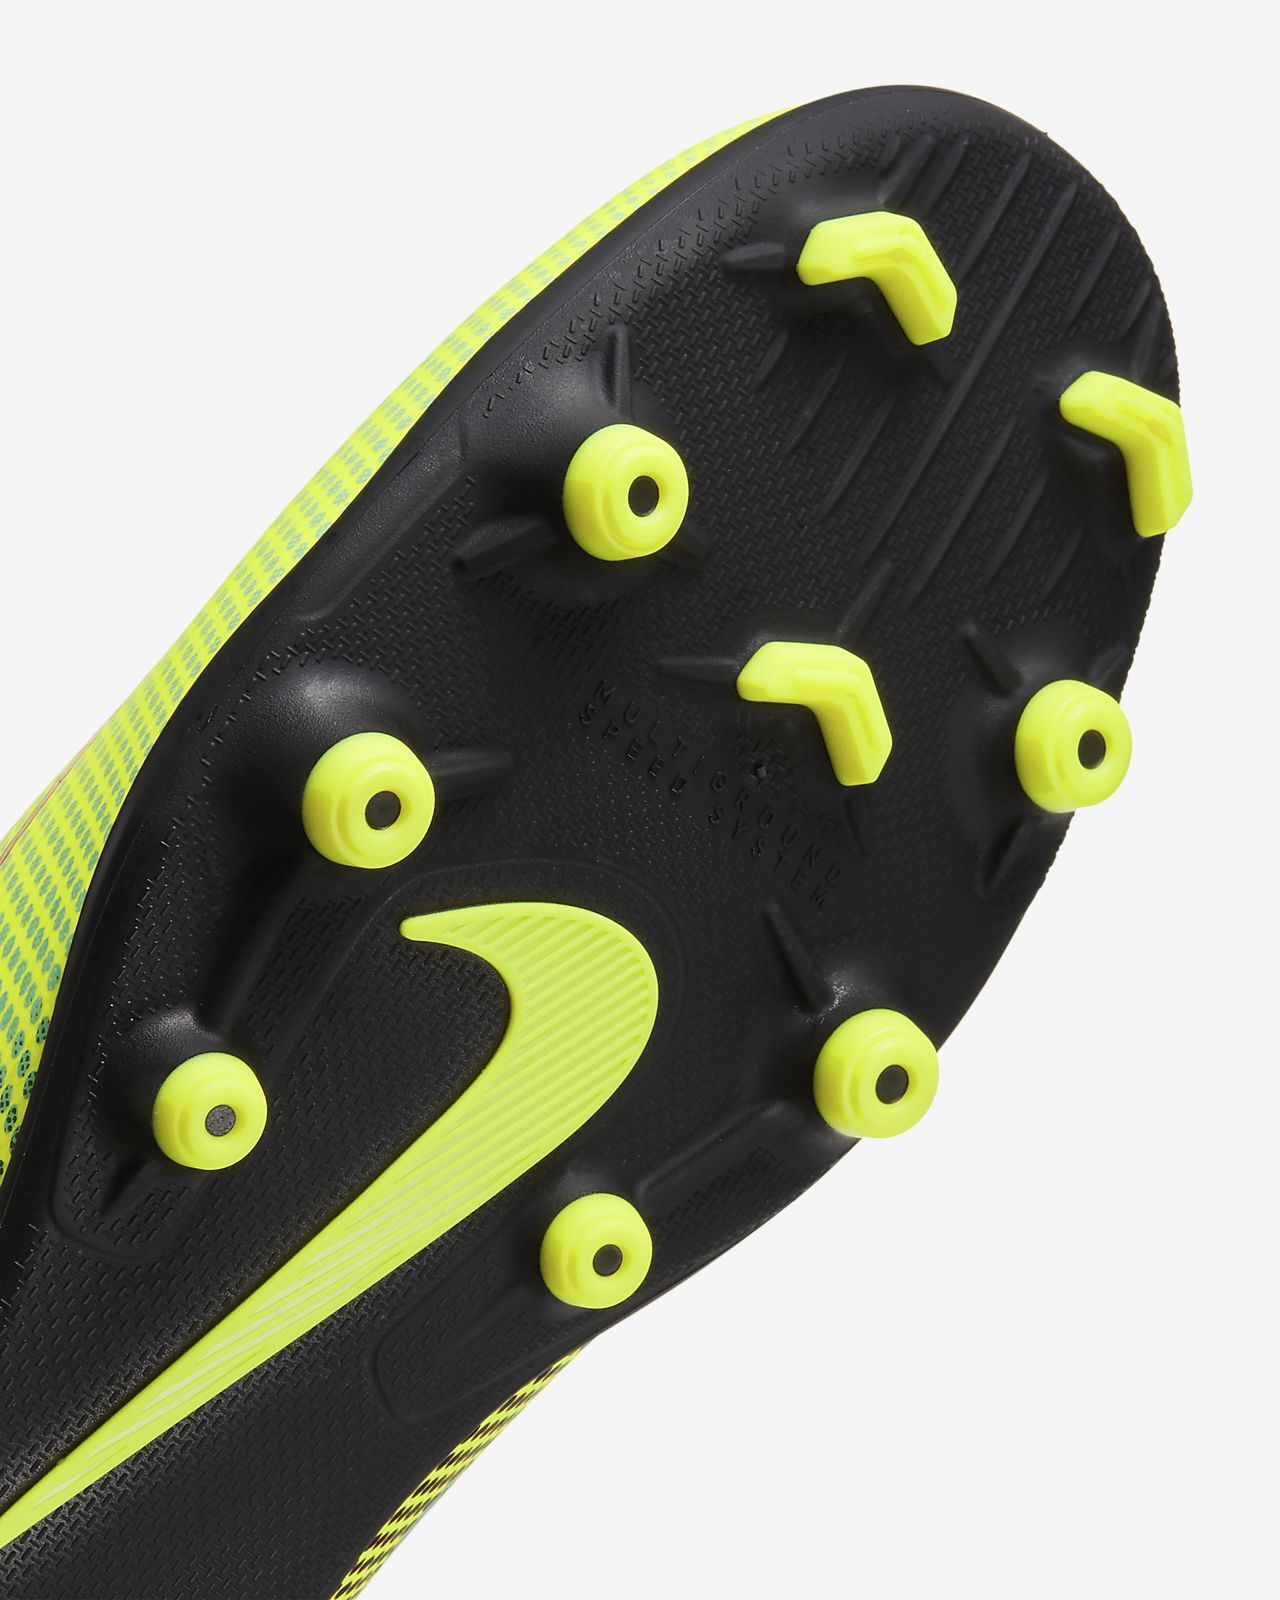 Nike Mercurial Superfly 6 Club Football Shoes Neymar Mg Jr.